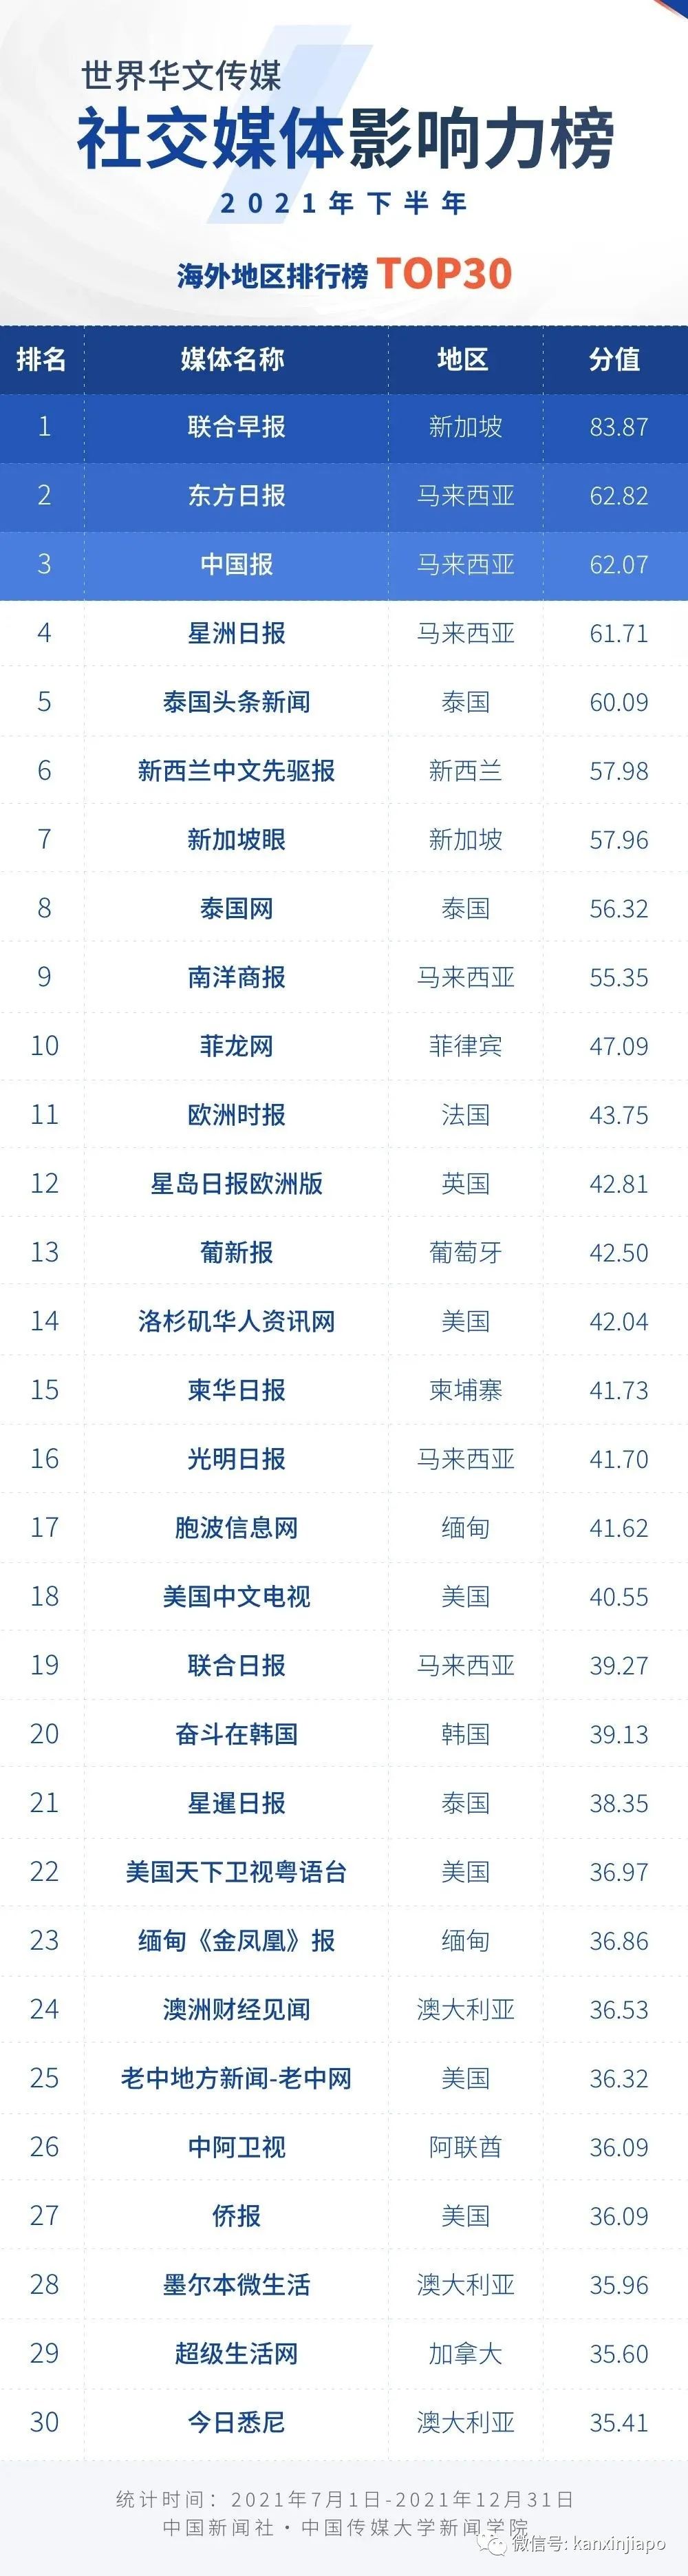 中国发布世界华文新媒体影响力榜，新加坡只有两家上榜